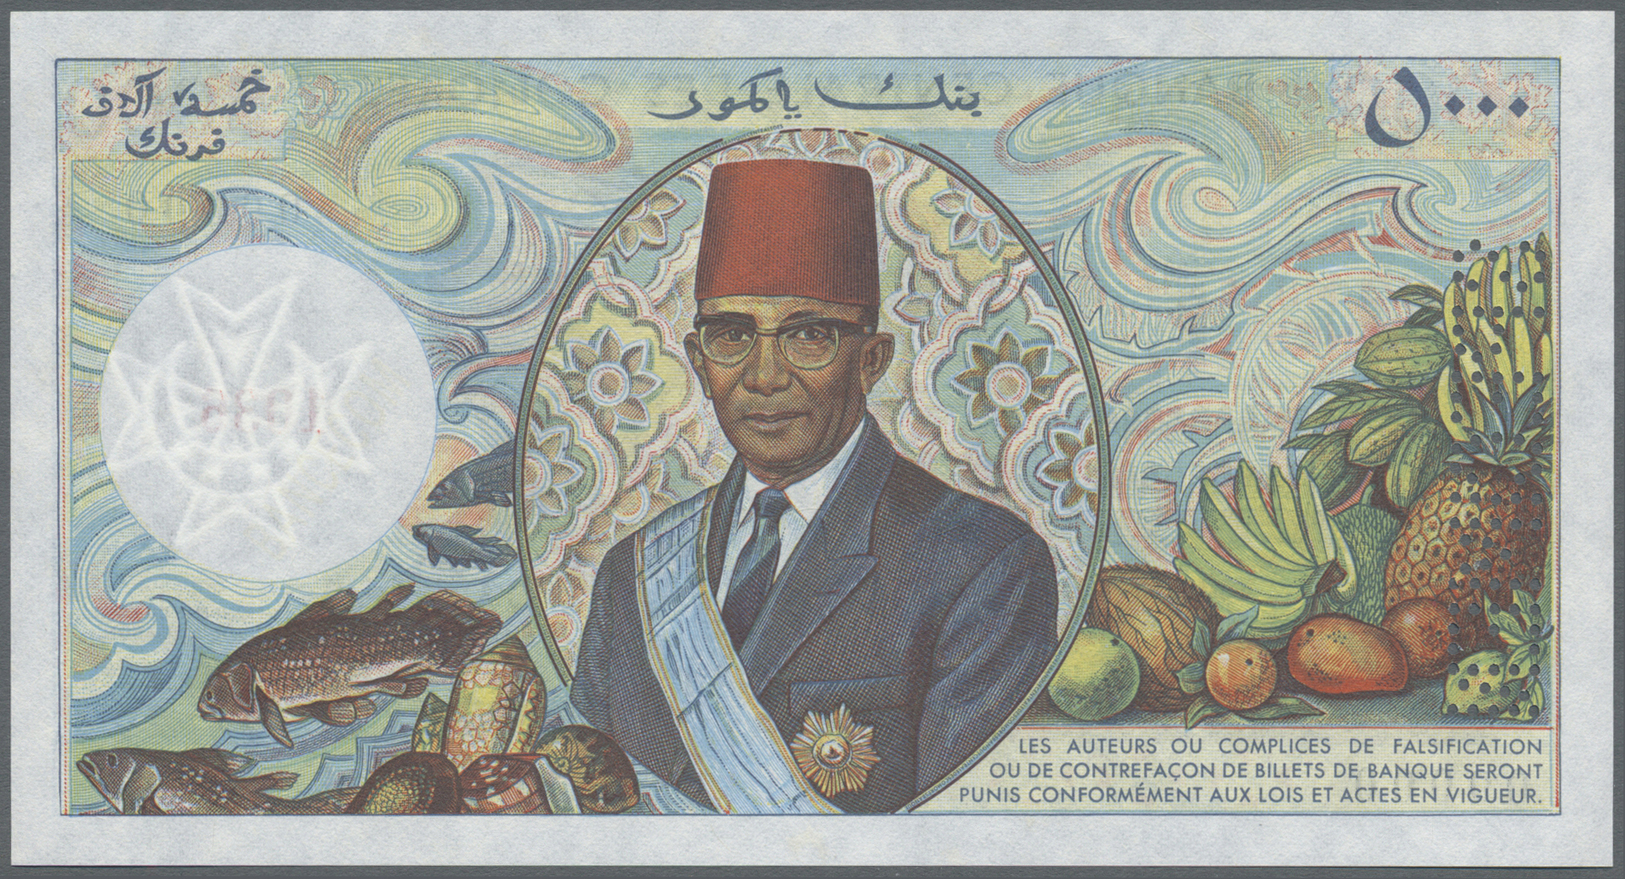 00578 Comoros / Komoren: Set Of 3 Specimen Notes Containing 2500, 5000 And 10.000 Francs ND(2005) P. 12s-14s, All With Z - Comoros